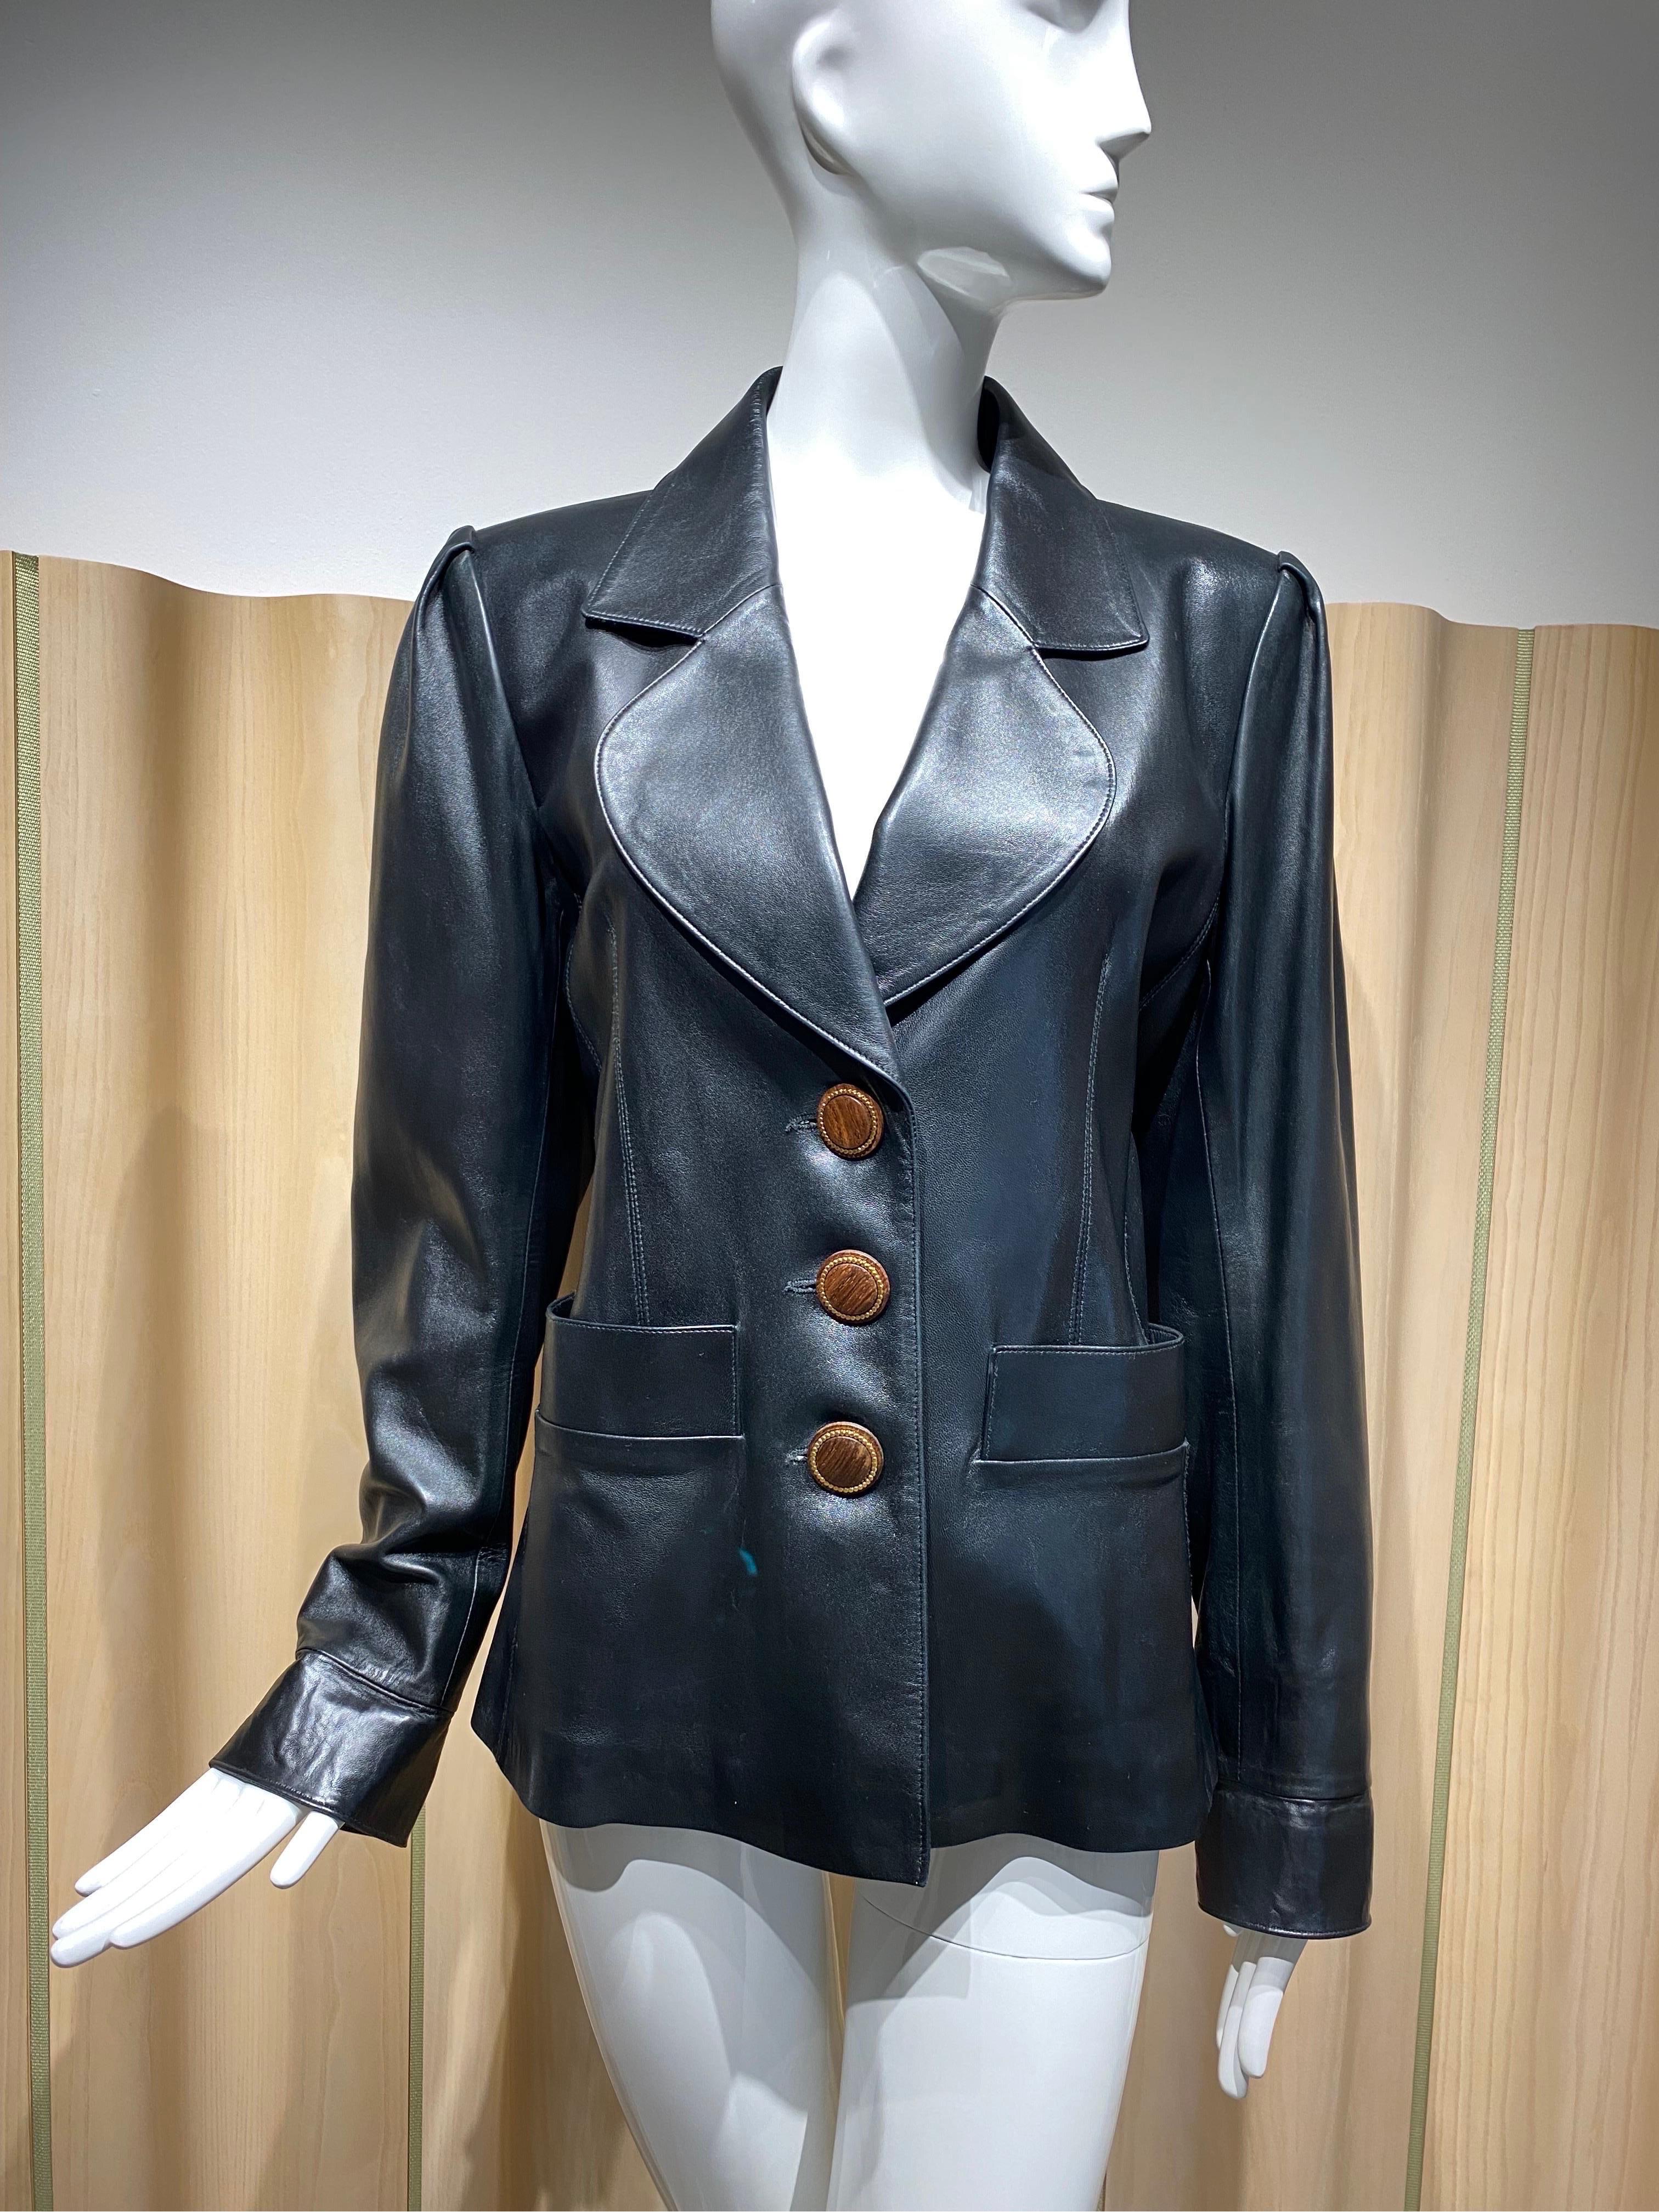 yves saint laurent leather jacket vintage